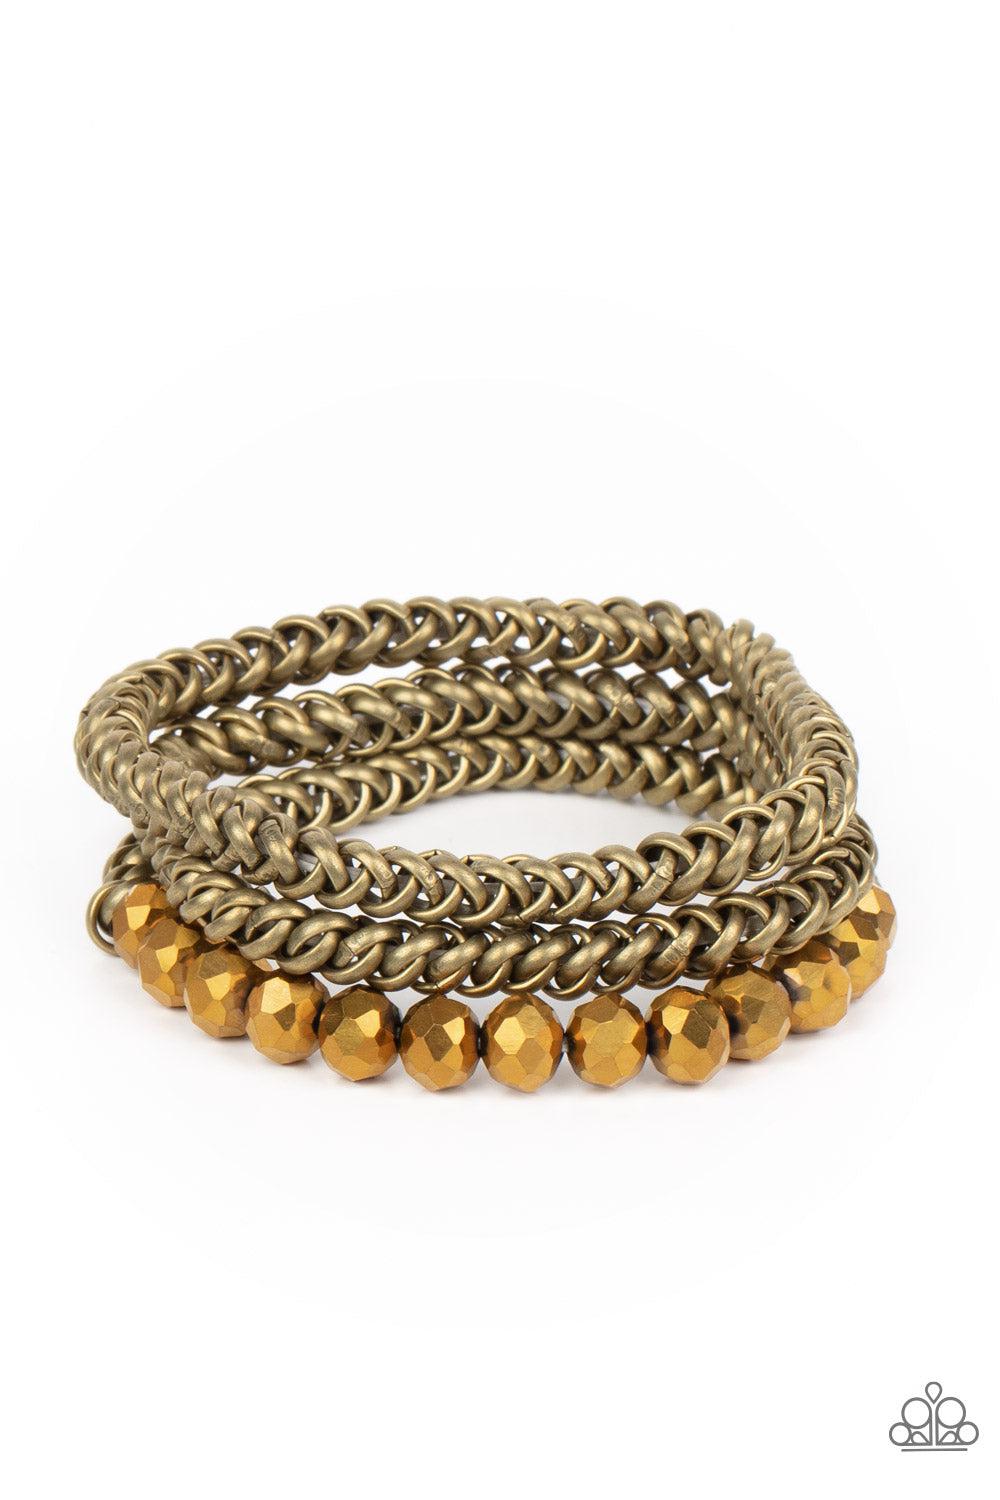 Gutsy and Glitzy Brass Bracelet - Paparazzi Accessories- lightbox - CarasShop.com - $5 Jewelry by Cara Jewels